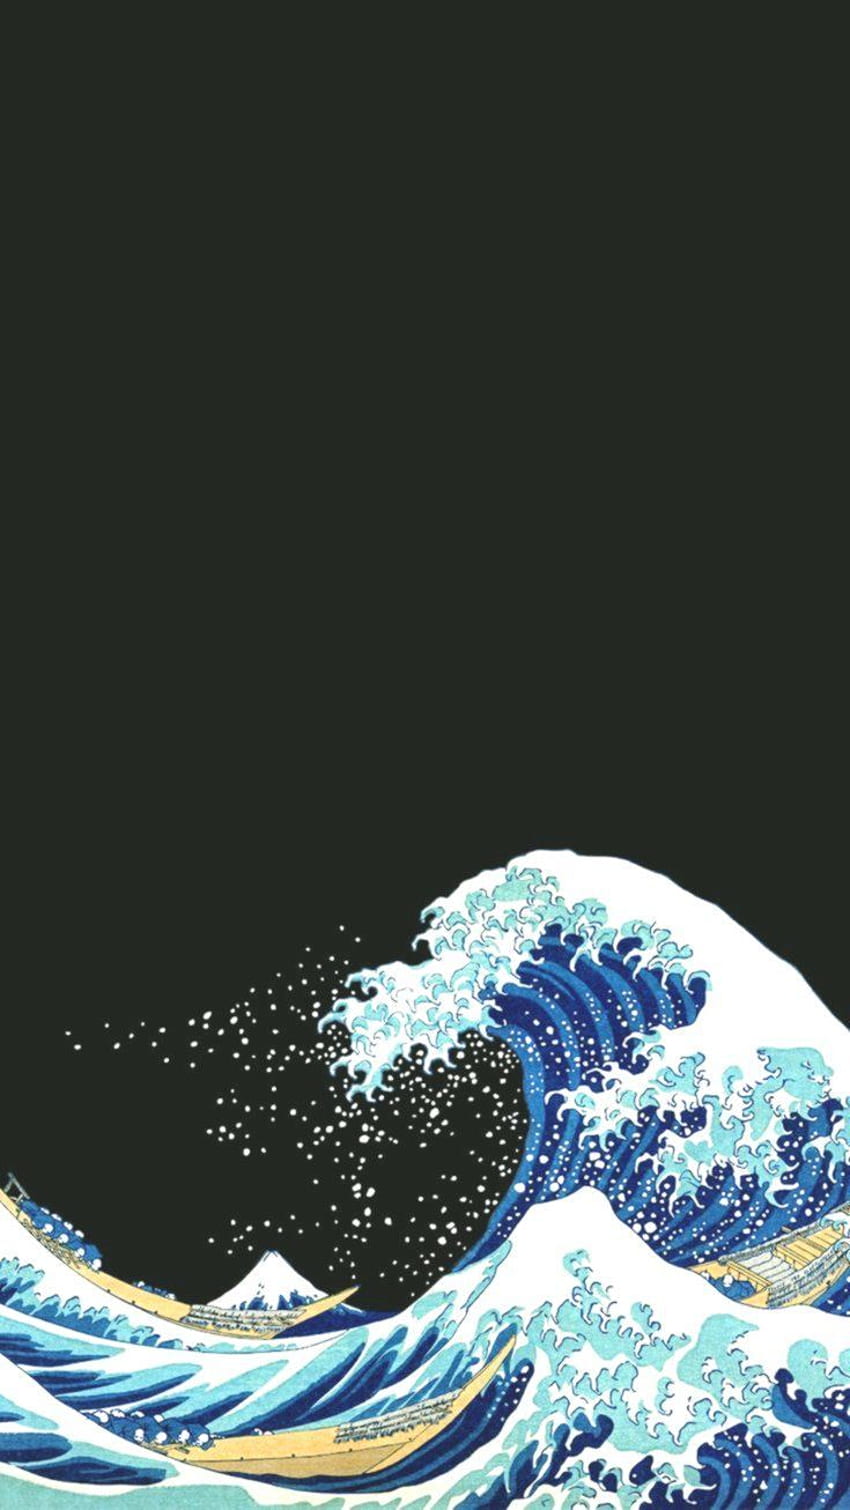 Great Wave off Kanagawa Pattern Wallpaper  Bobbi Beck  Bobbi Beck